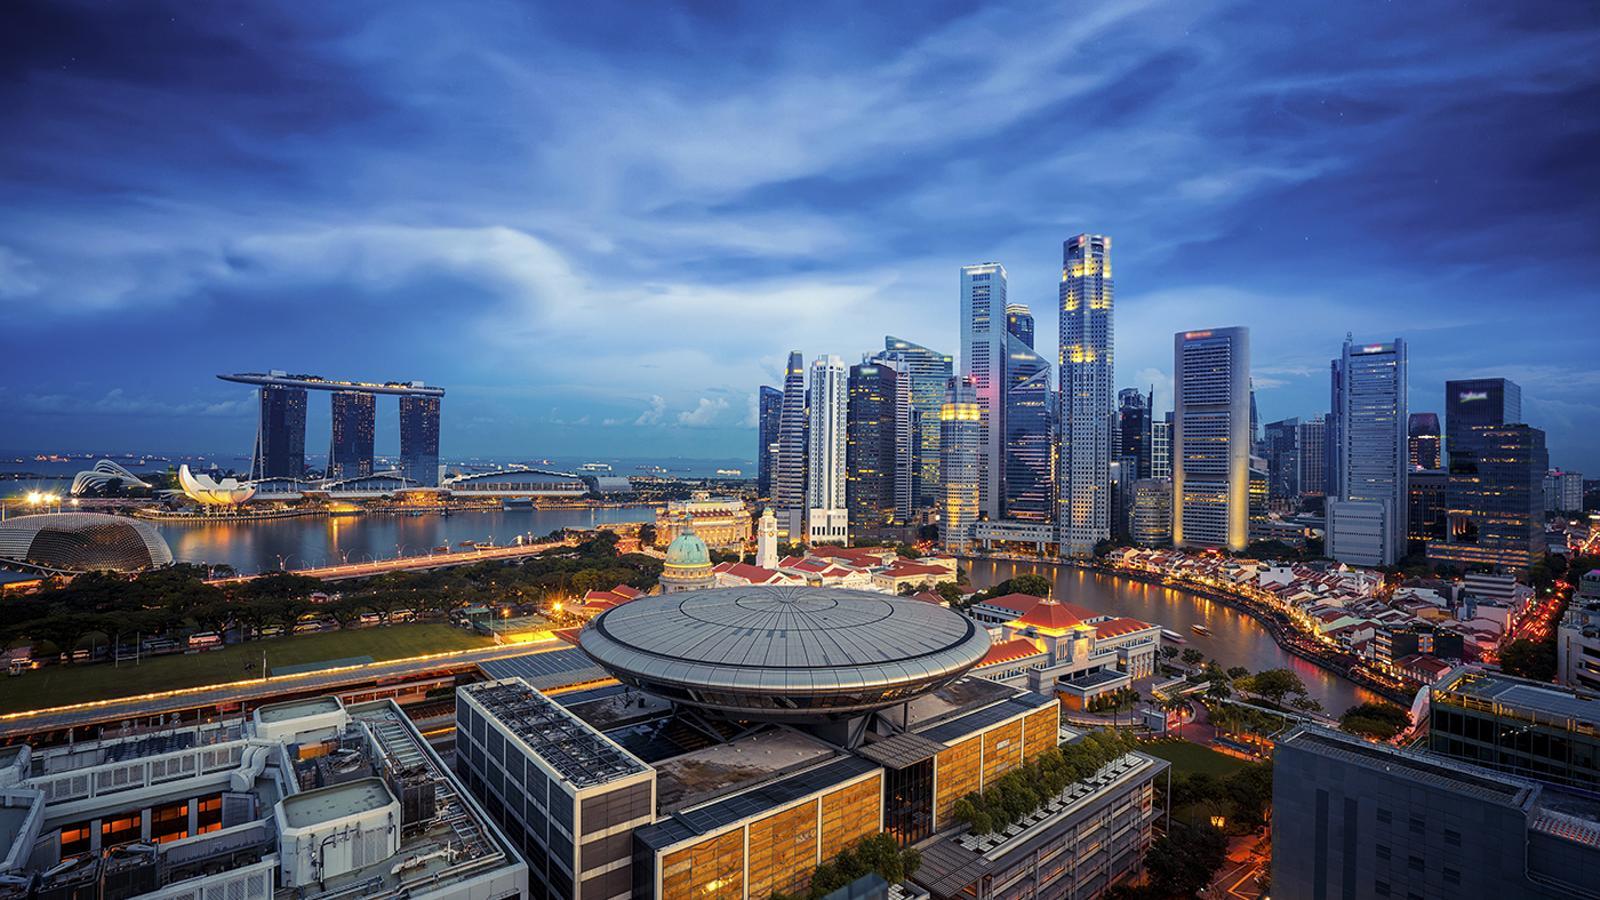 El món tendeix cap a les grans ciutats, com Singapur, que veiem en imatge. / Getty Images